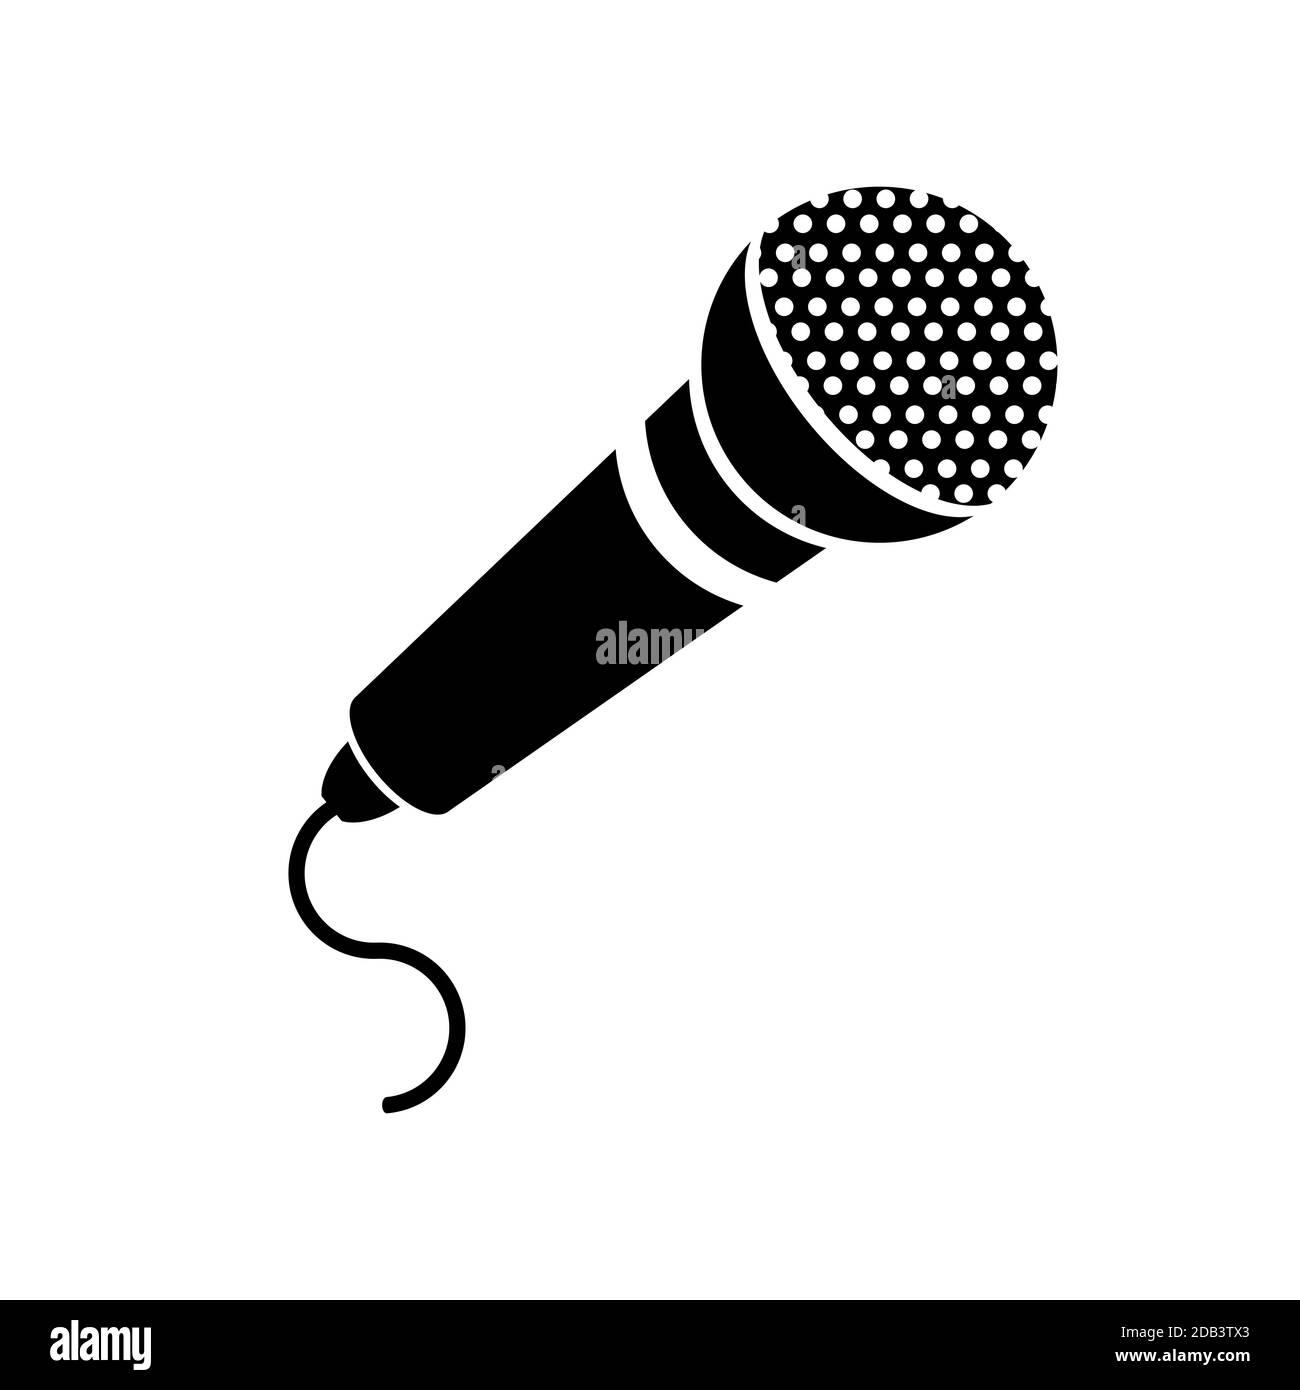 Retro Mikrofon Symbol isoliert auf weißem Hintergrund Stockfotografie -  Alamy